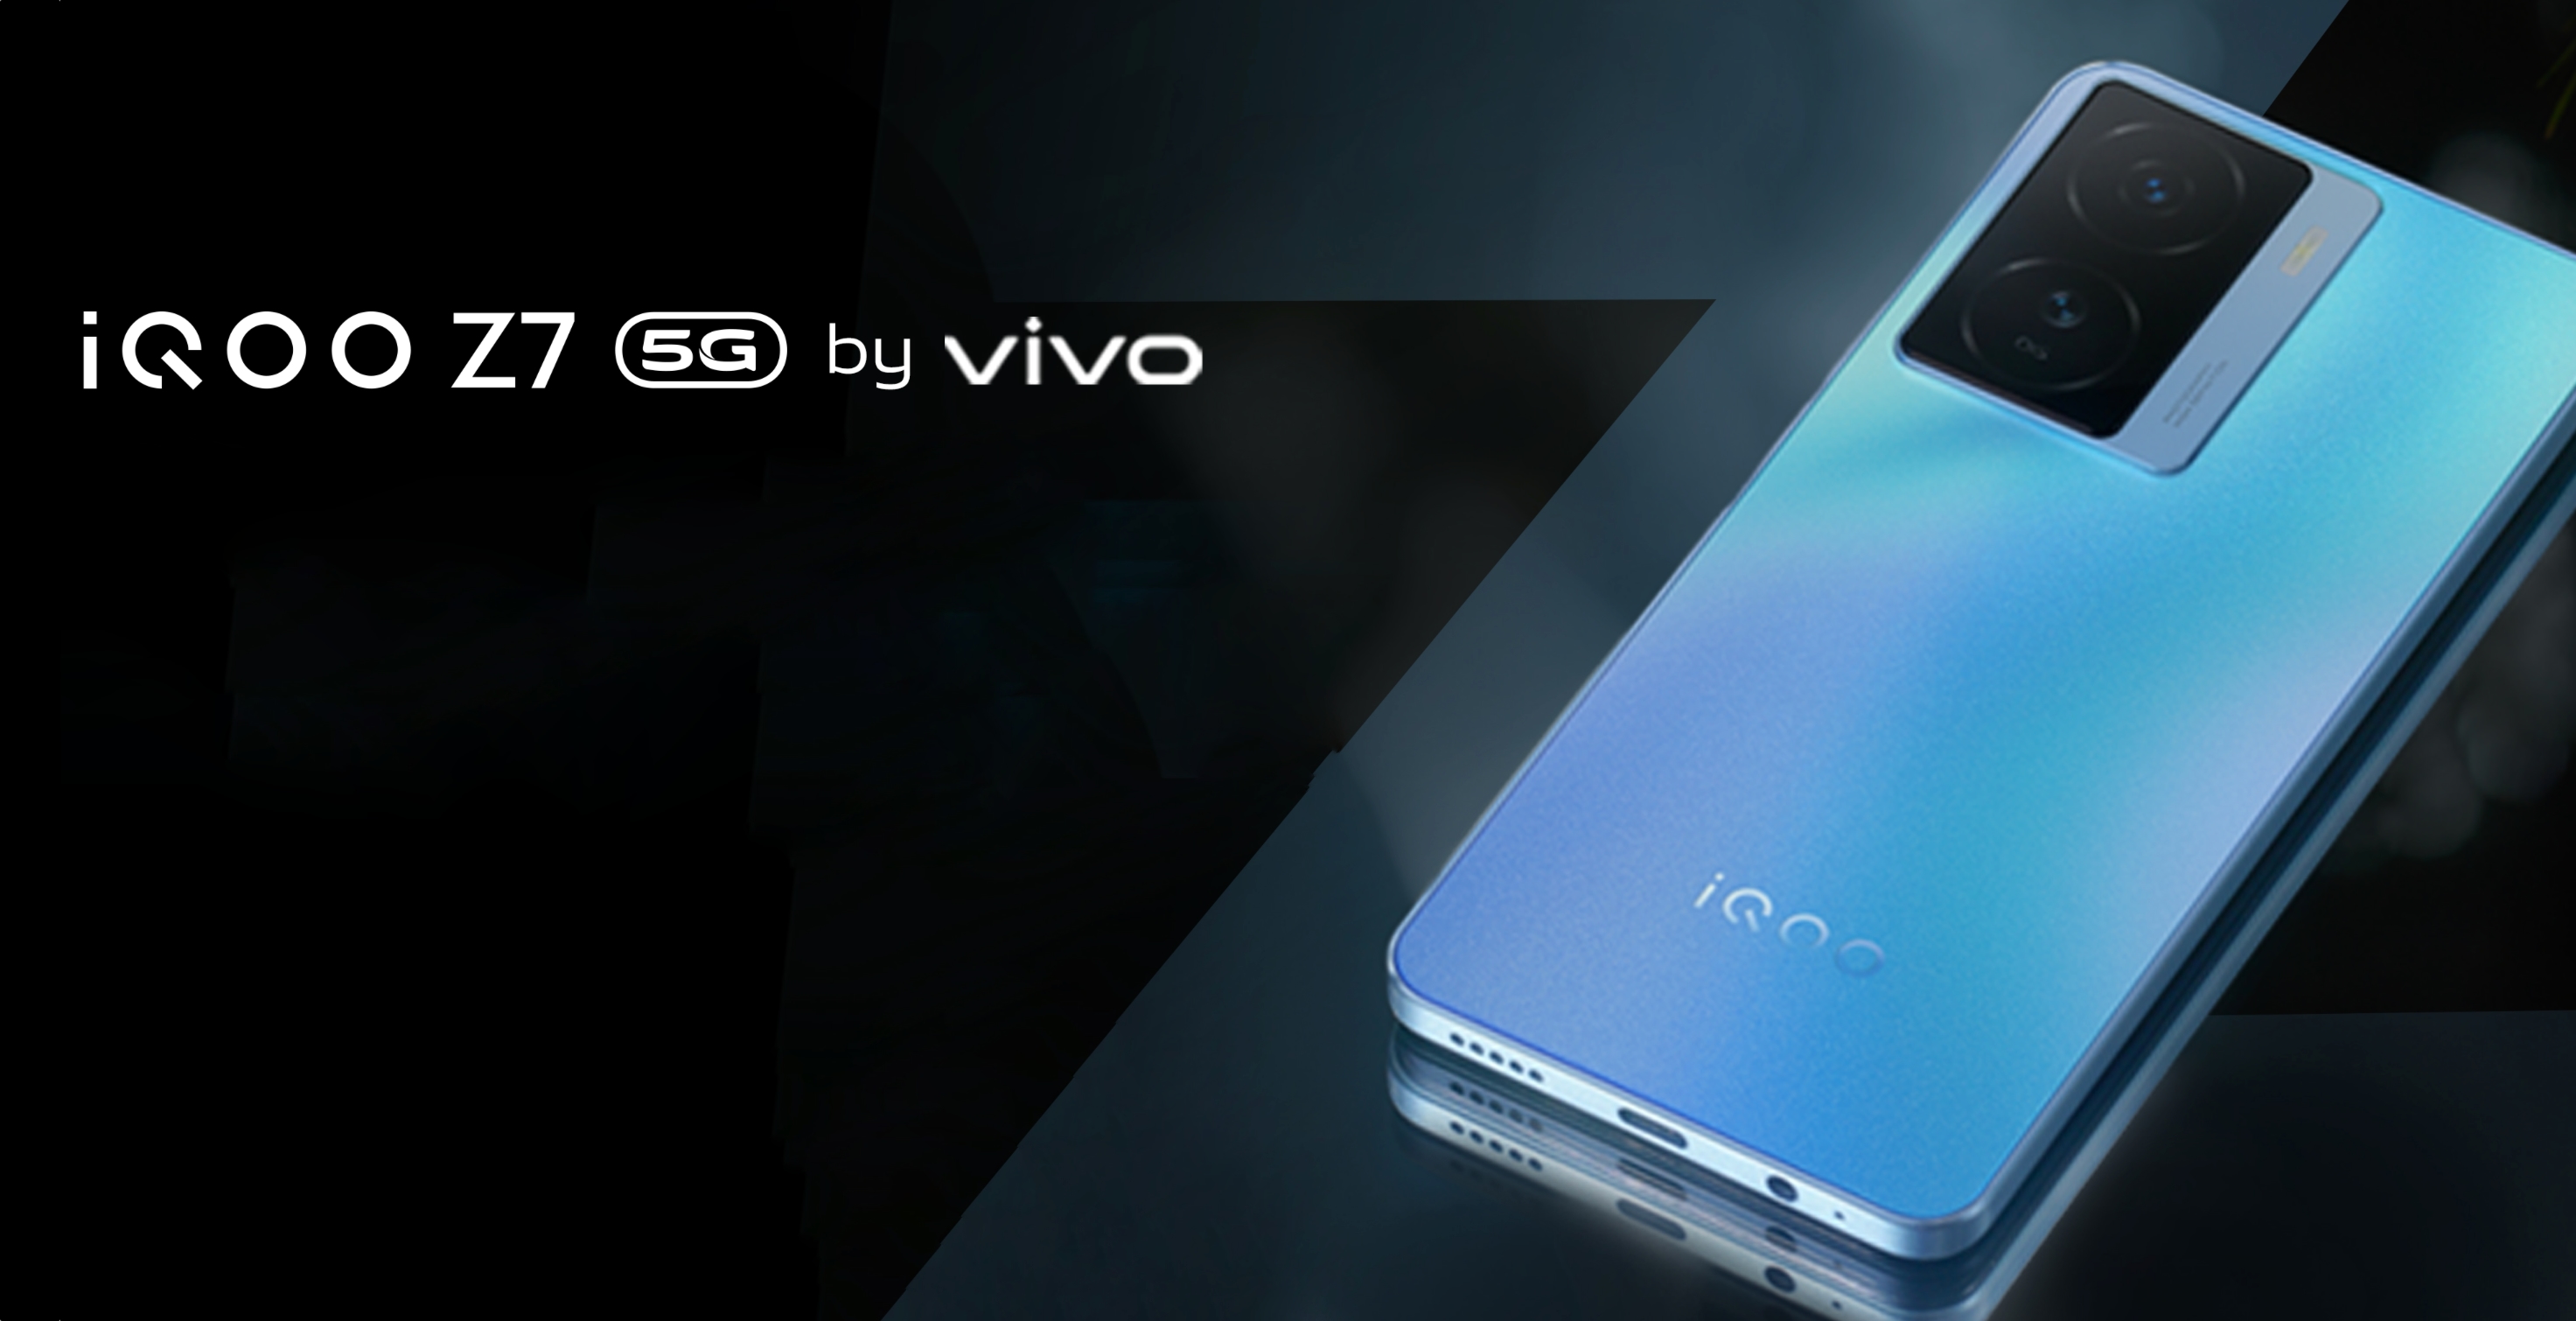 vivo stellt iQOO Z7 5G vor: 90Hz AMOLED-Display, MediaTek Dimensity 920 Chip und 64MP Kamera für $230